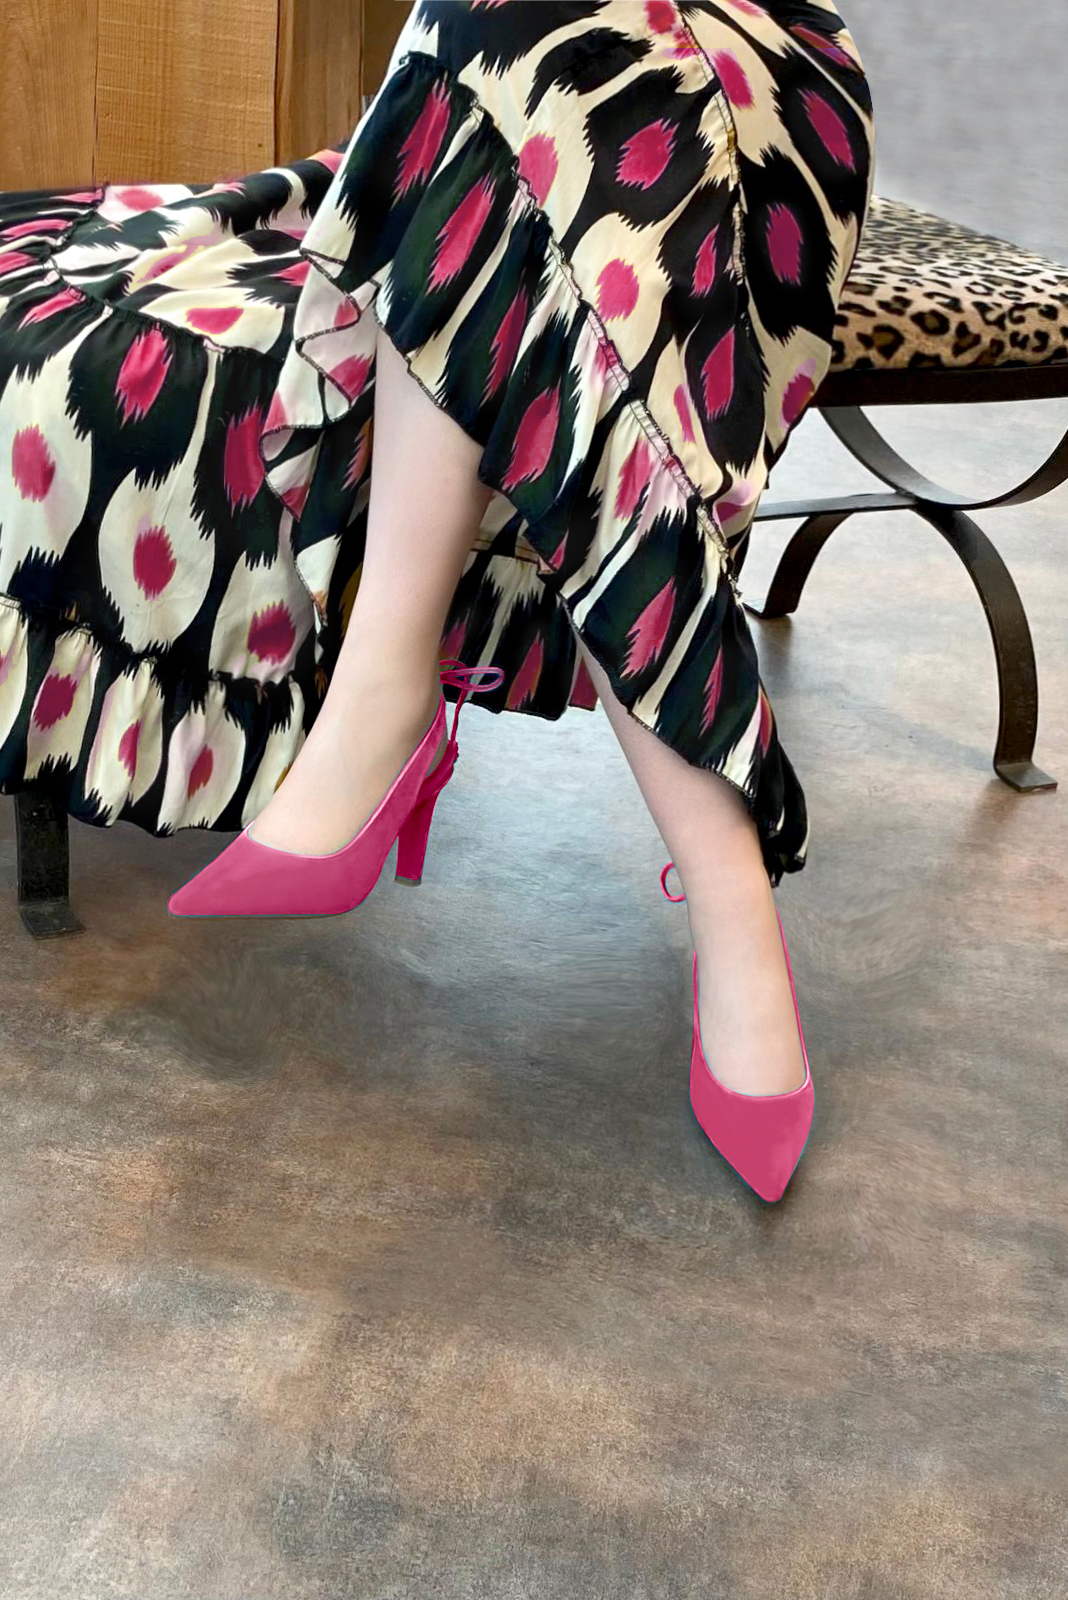 Chaussure femme à brides :  couleur rose fuchsia. Bout pointu. Talon haut fin. Vue porté - Florence KOOIJMAN